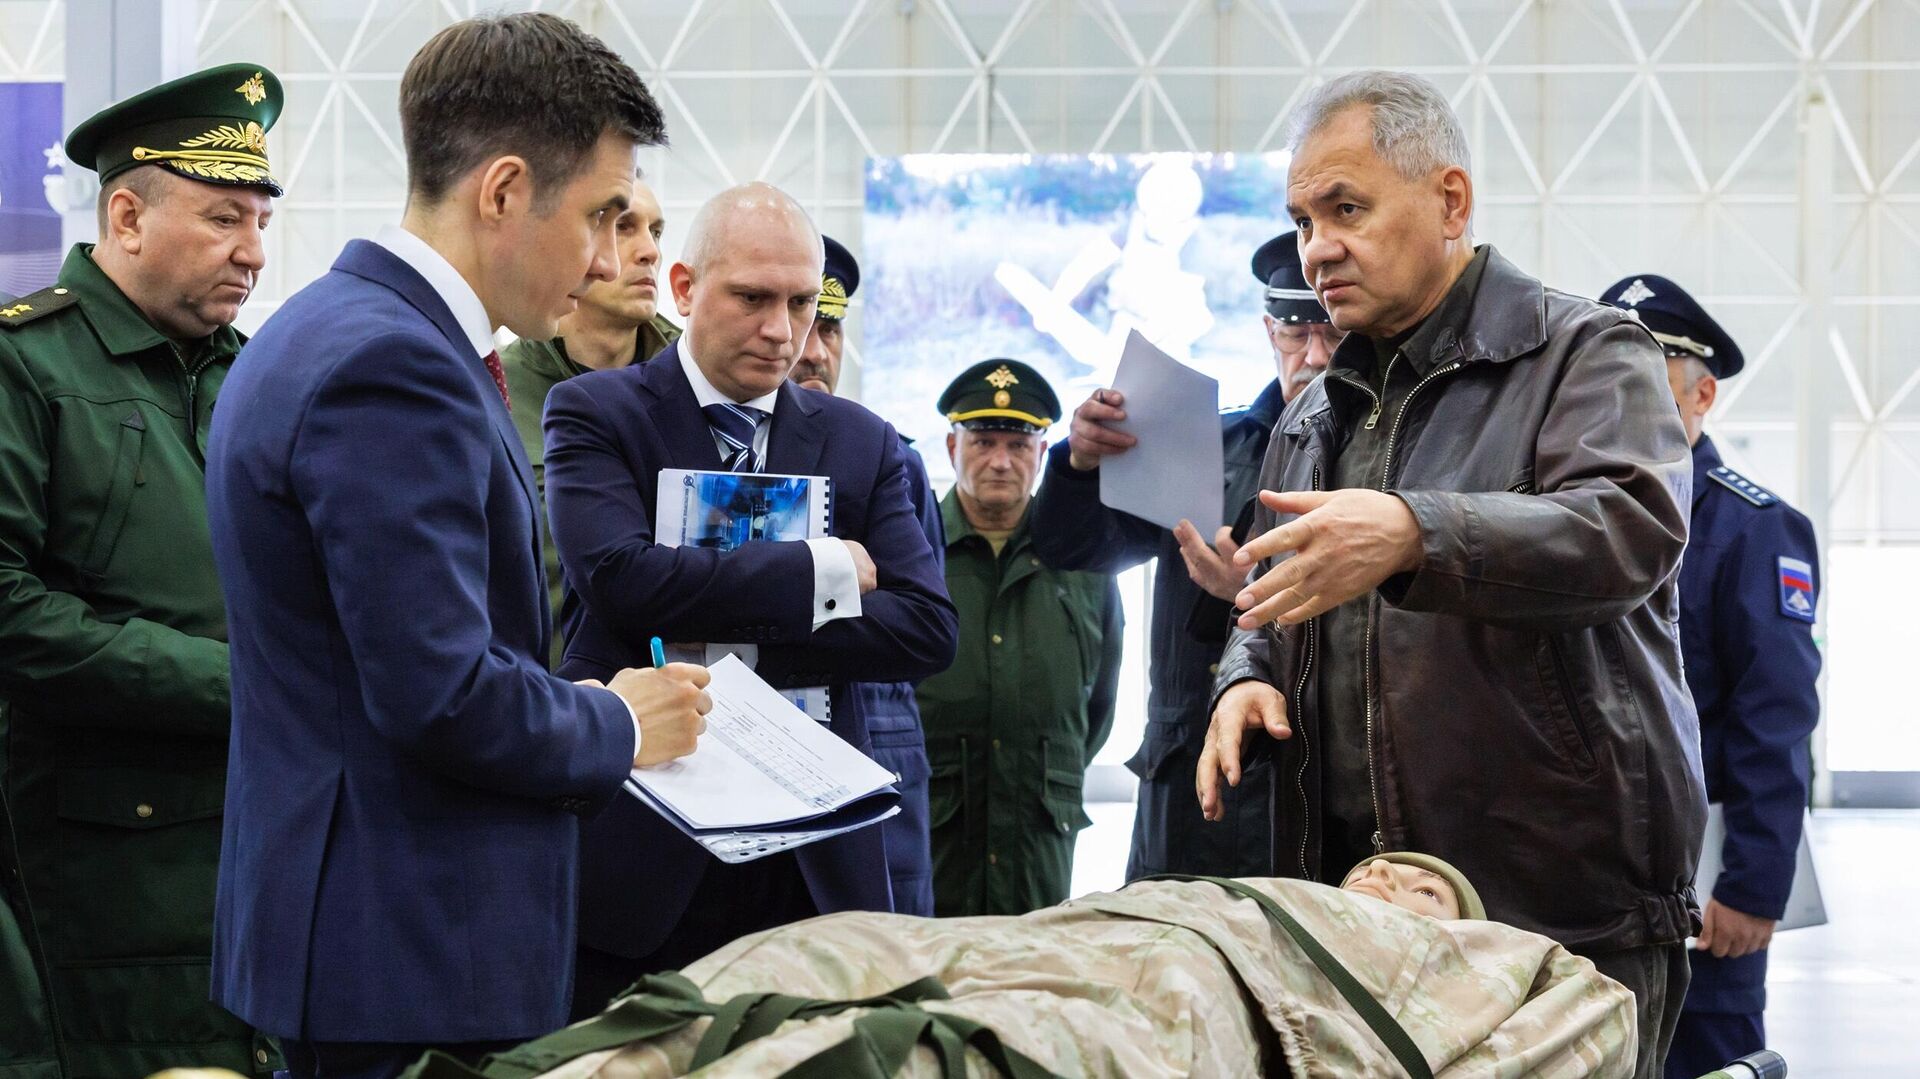 Министр обороны РФ Сергей Шойгу осматривает перспективные образцы военной техники в конгрессно-выставочном центре Патриот1